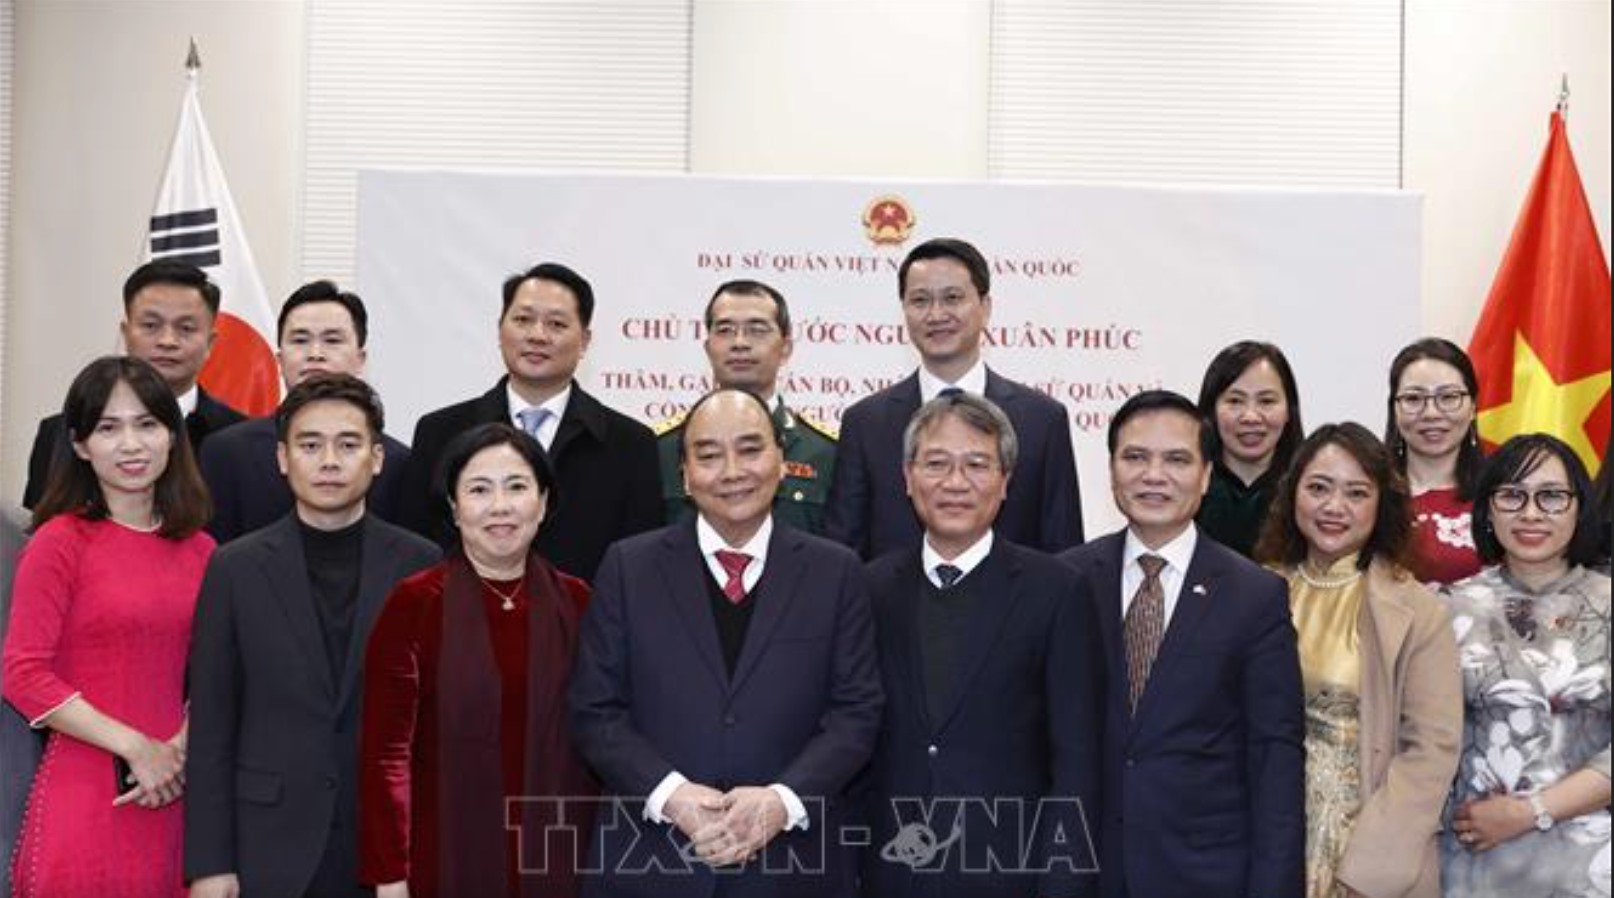 Chủ tịch nước Nguyễn Xuân Phúc gặp gỡ cán bộ nhân viên Đại sứ quán và đại diện cộng đồng người Việt Nam tại Hàn Quốc. Ảnh: TTXVN